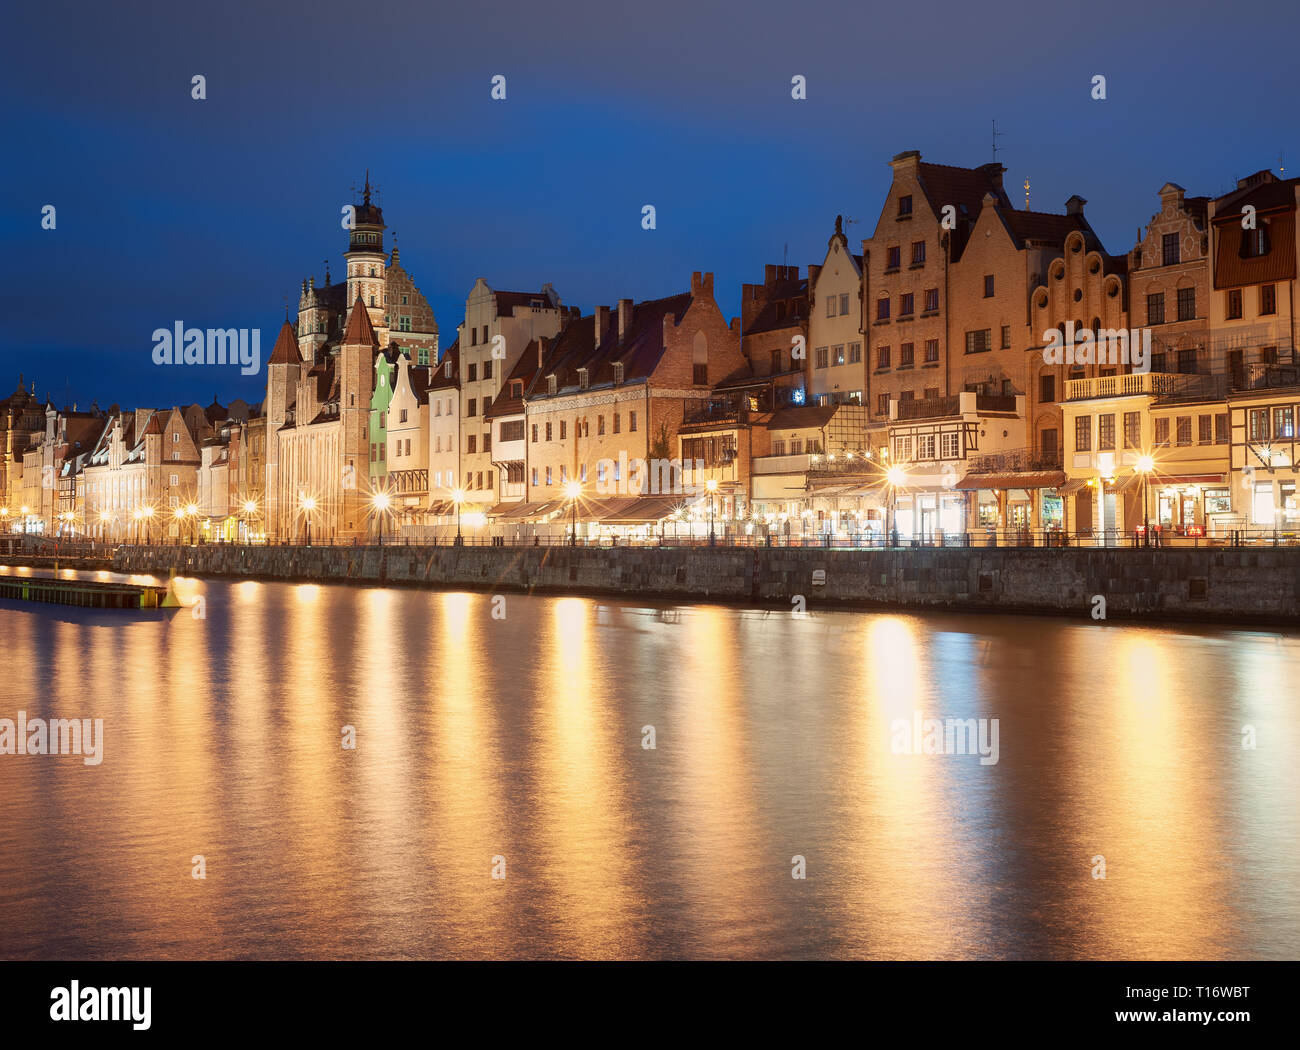 Altstadt in Danzig, Polen, nachts. Promenade und Stadt Lichtreflexionen. Stockfoto